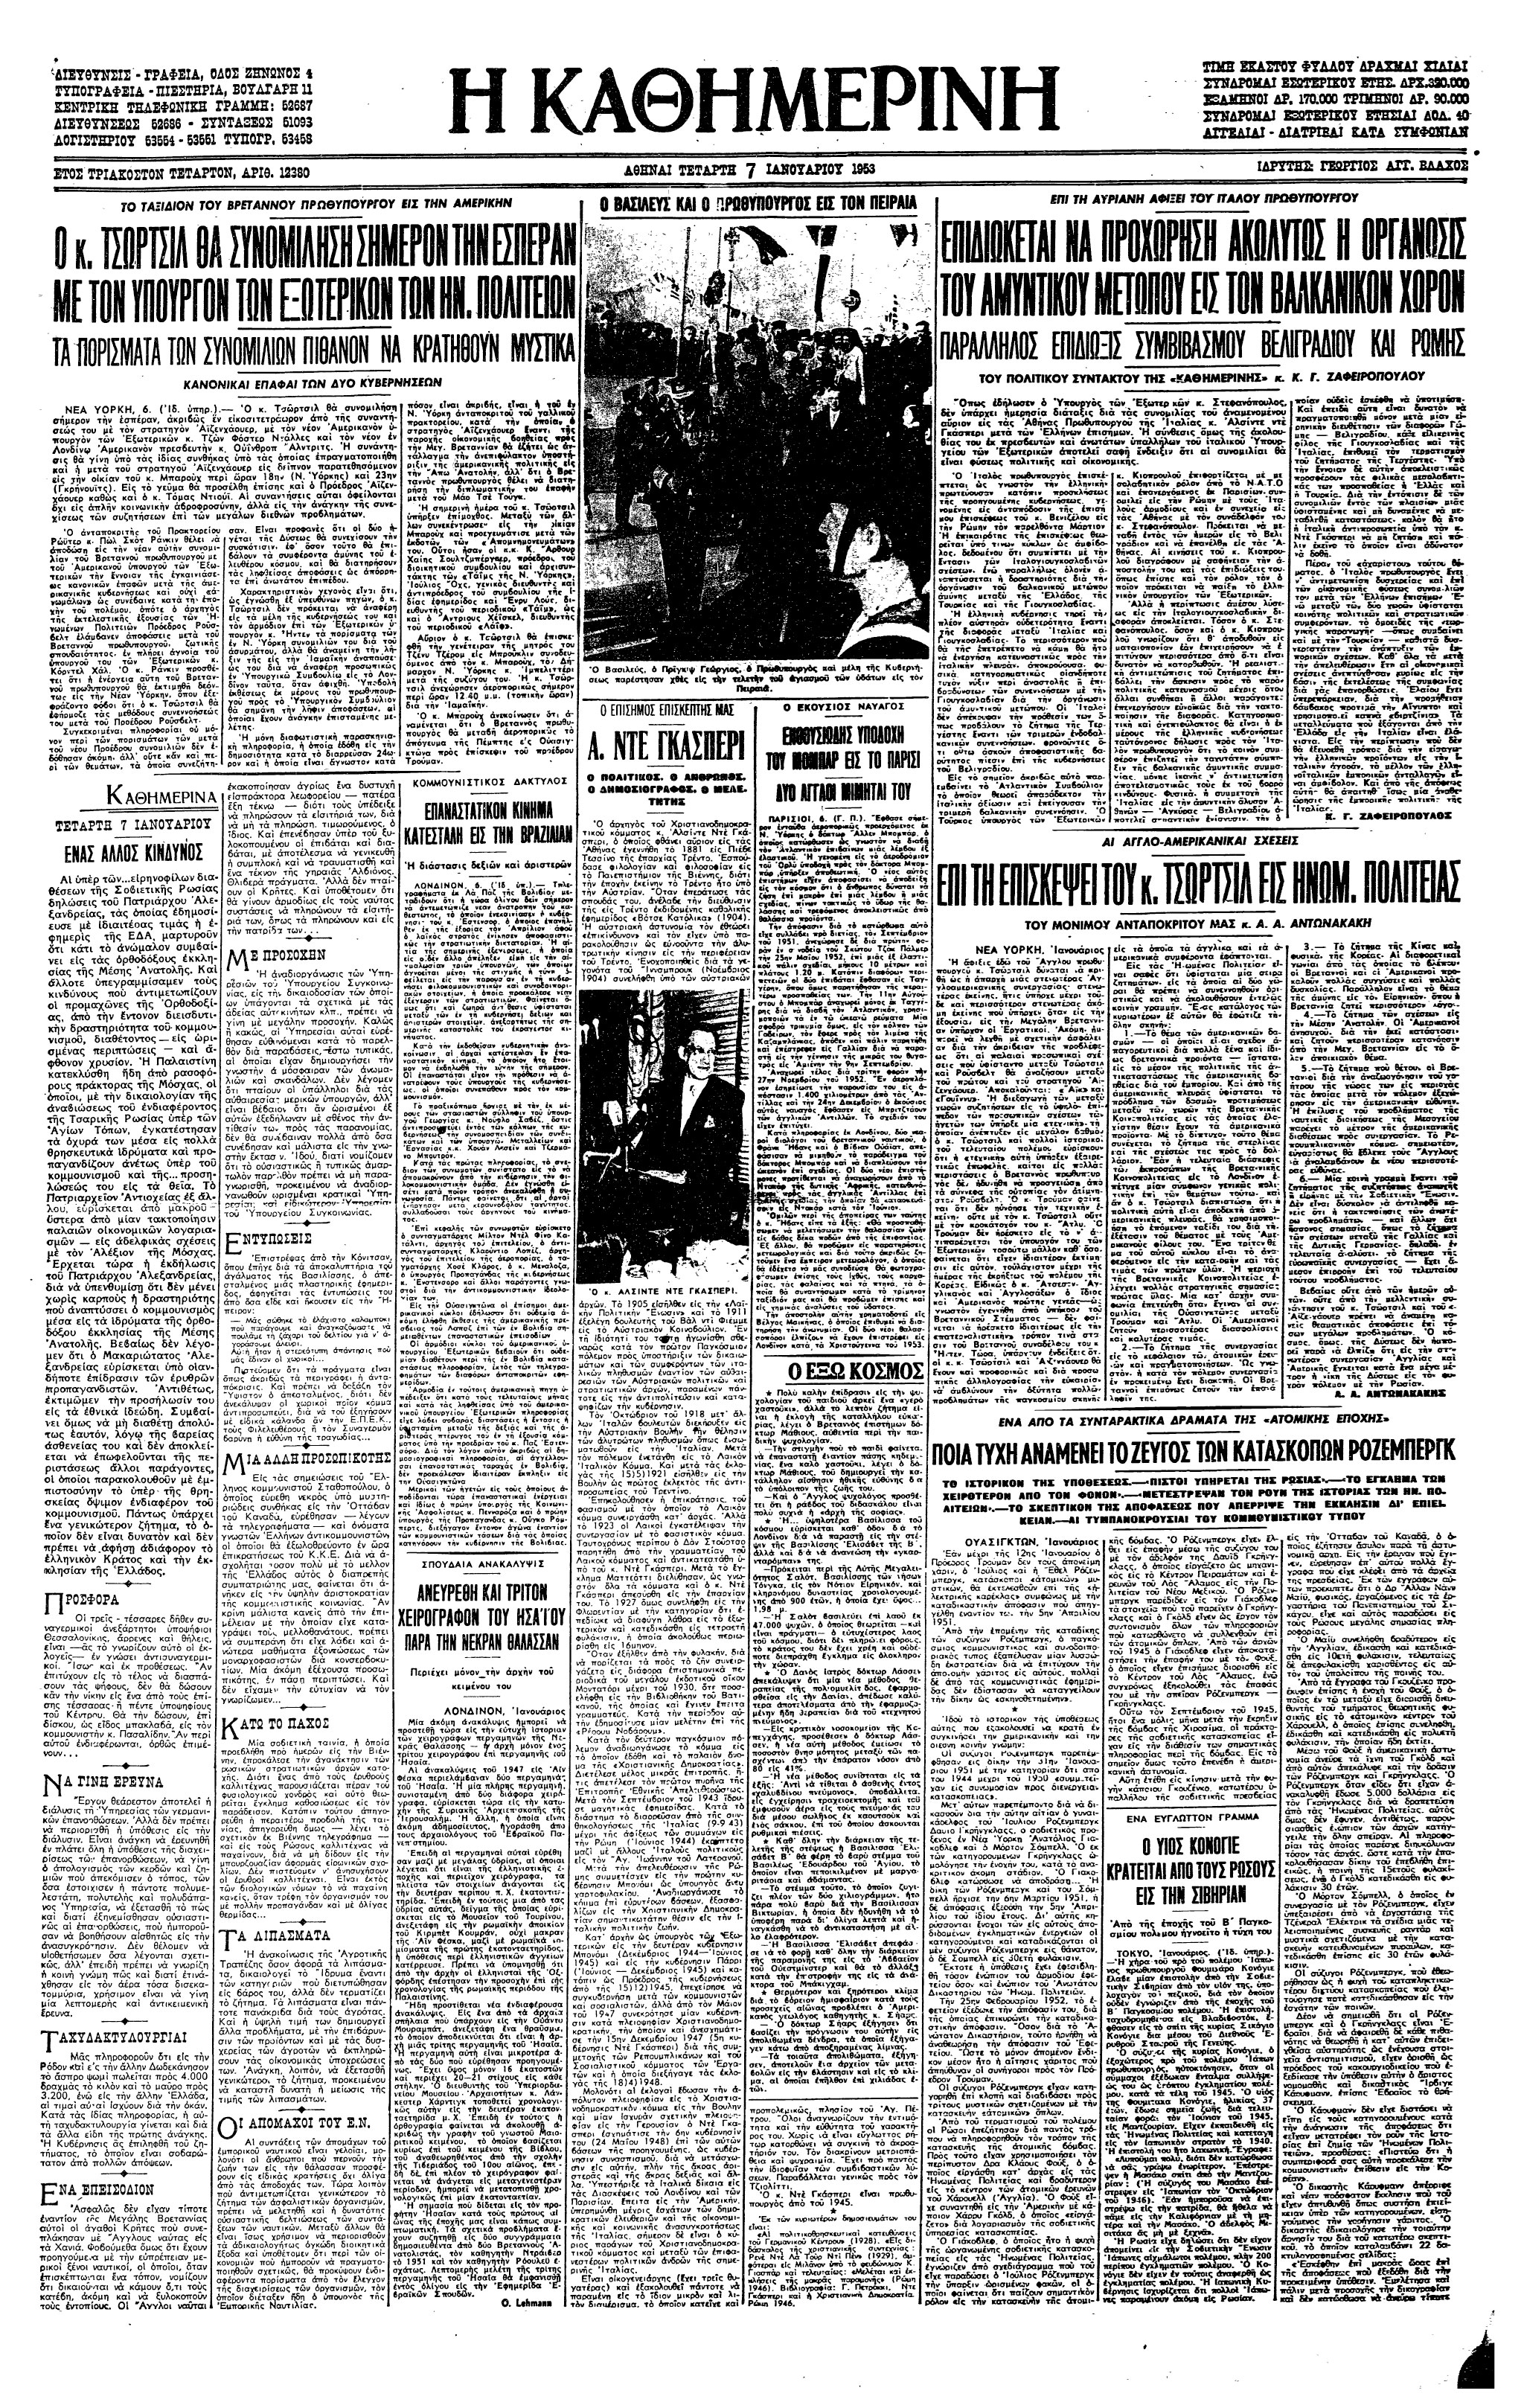 Σαν σήμερα: 19 Ιουνίου 1953 – Εκτελείται για κατασκοπεία το ζεύγος Ρόζενμπεργκ-1